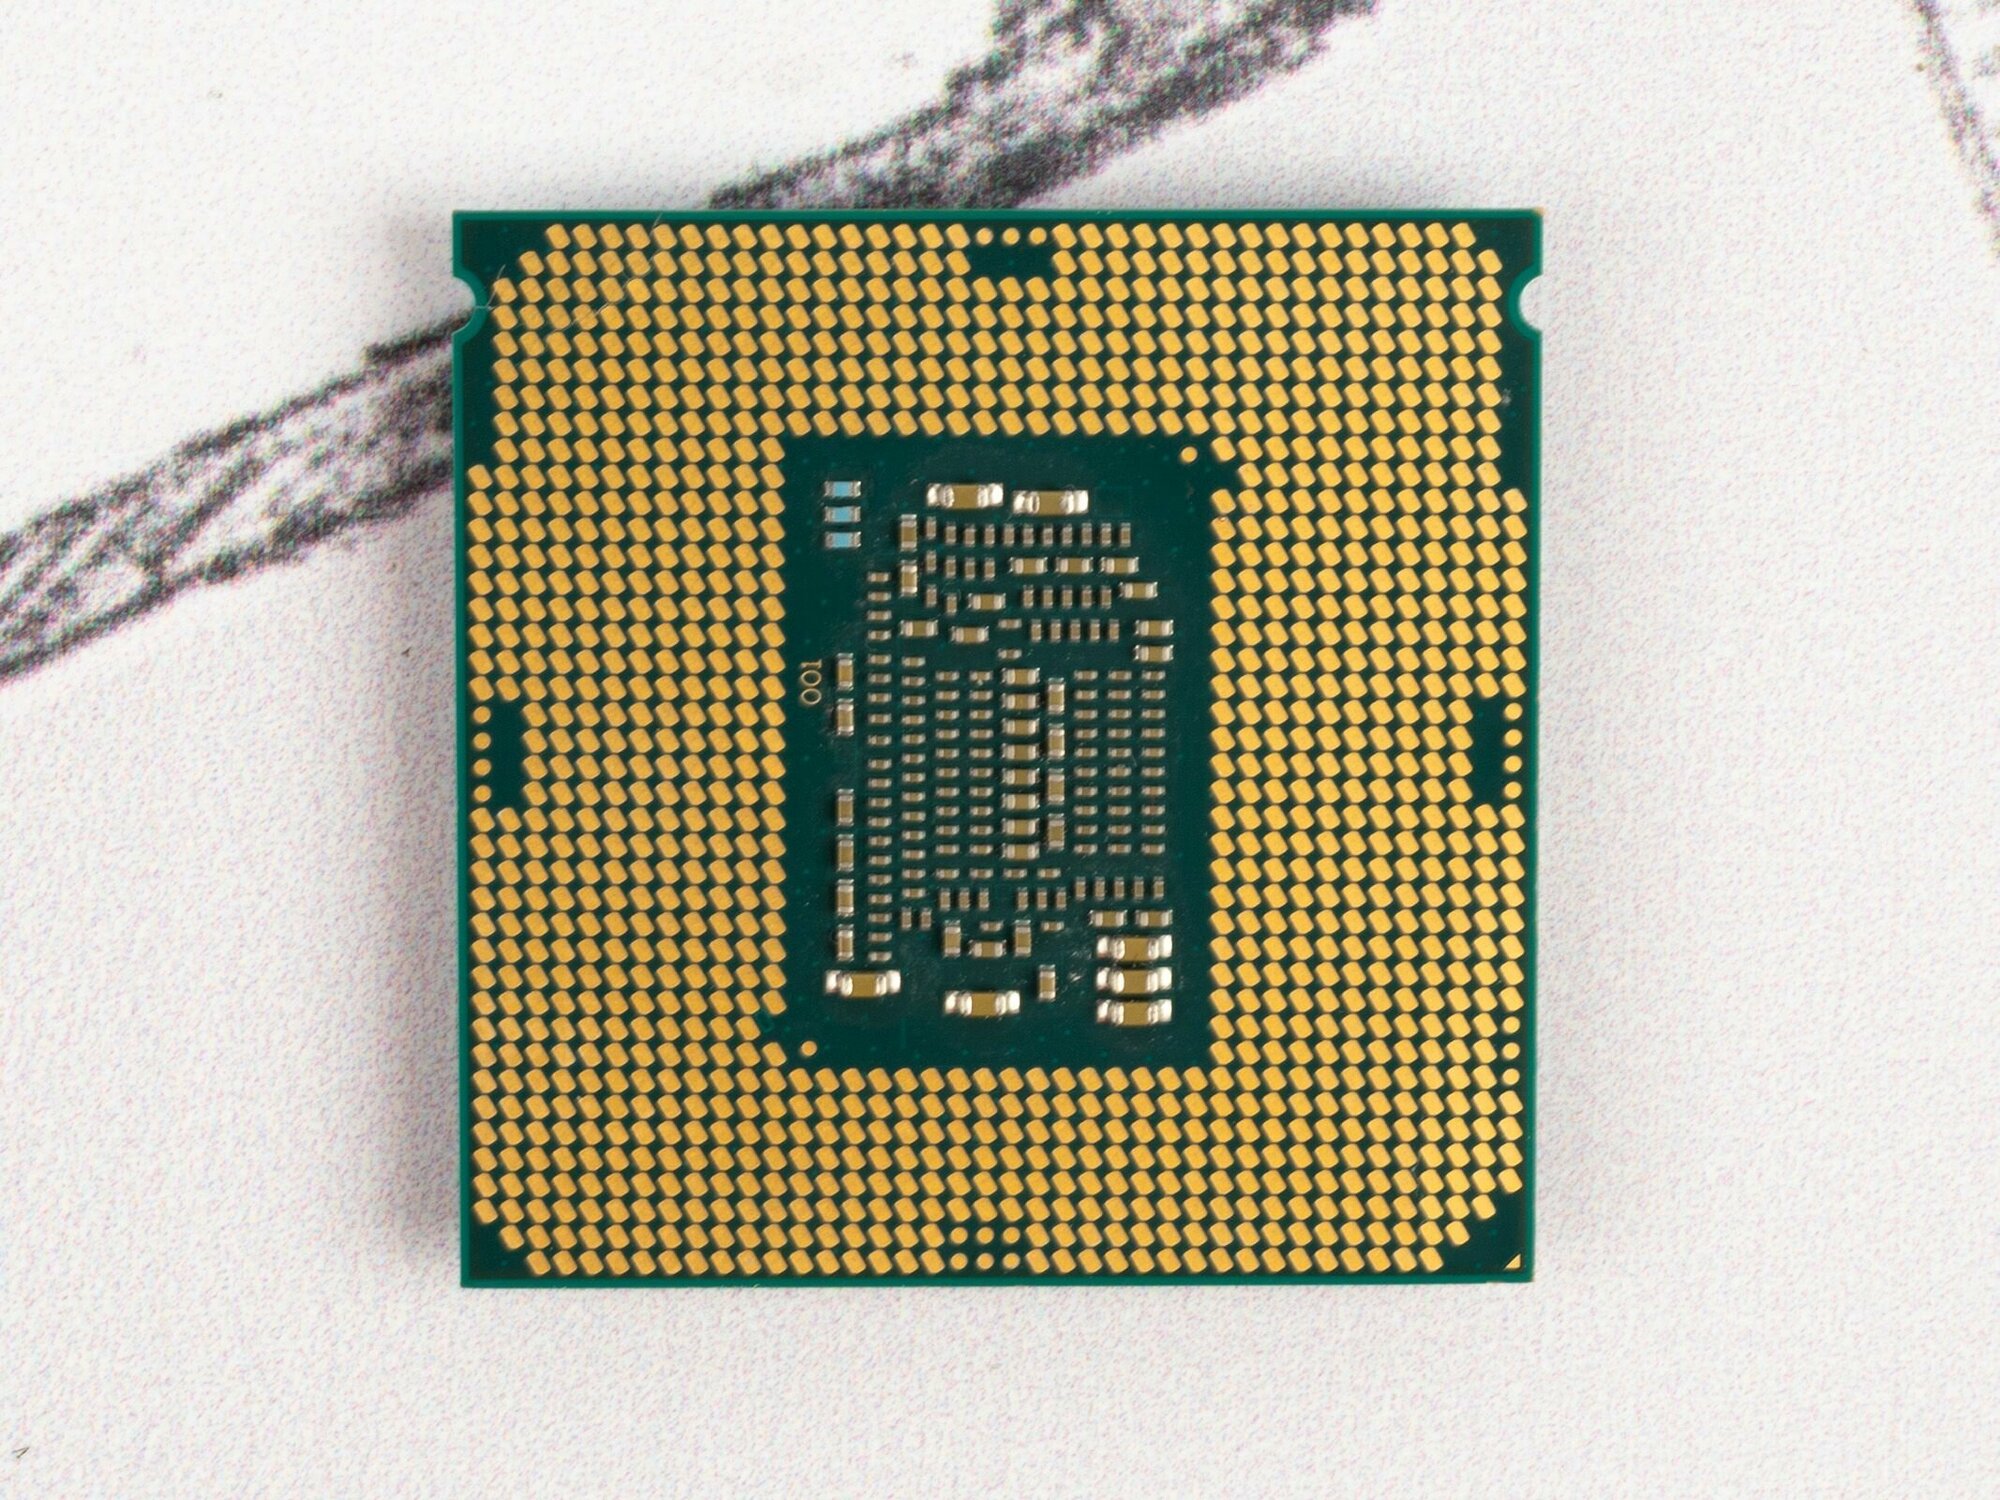 Процессор Intel Core i3-8100 LGA1151 v2 4 x 3600 МГц